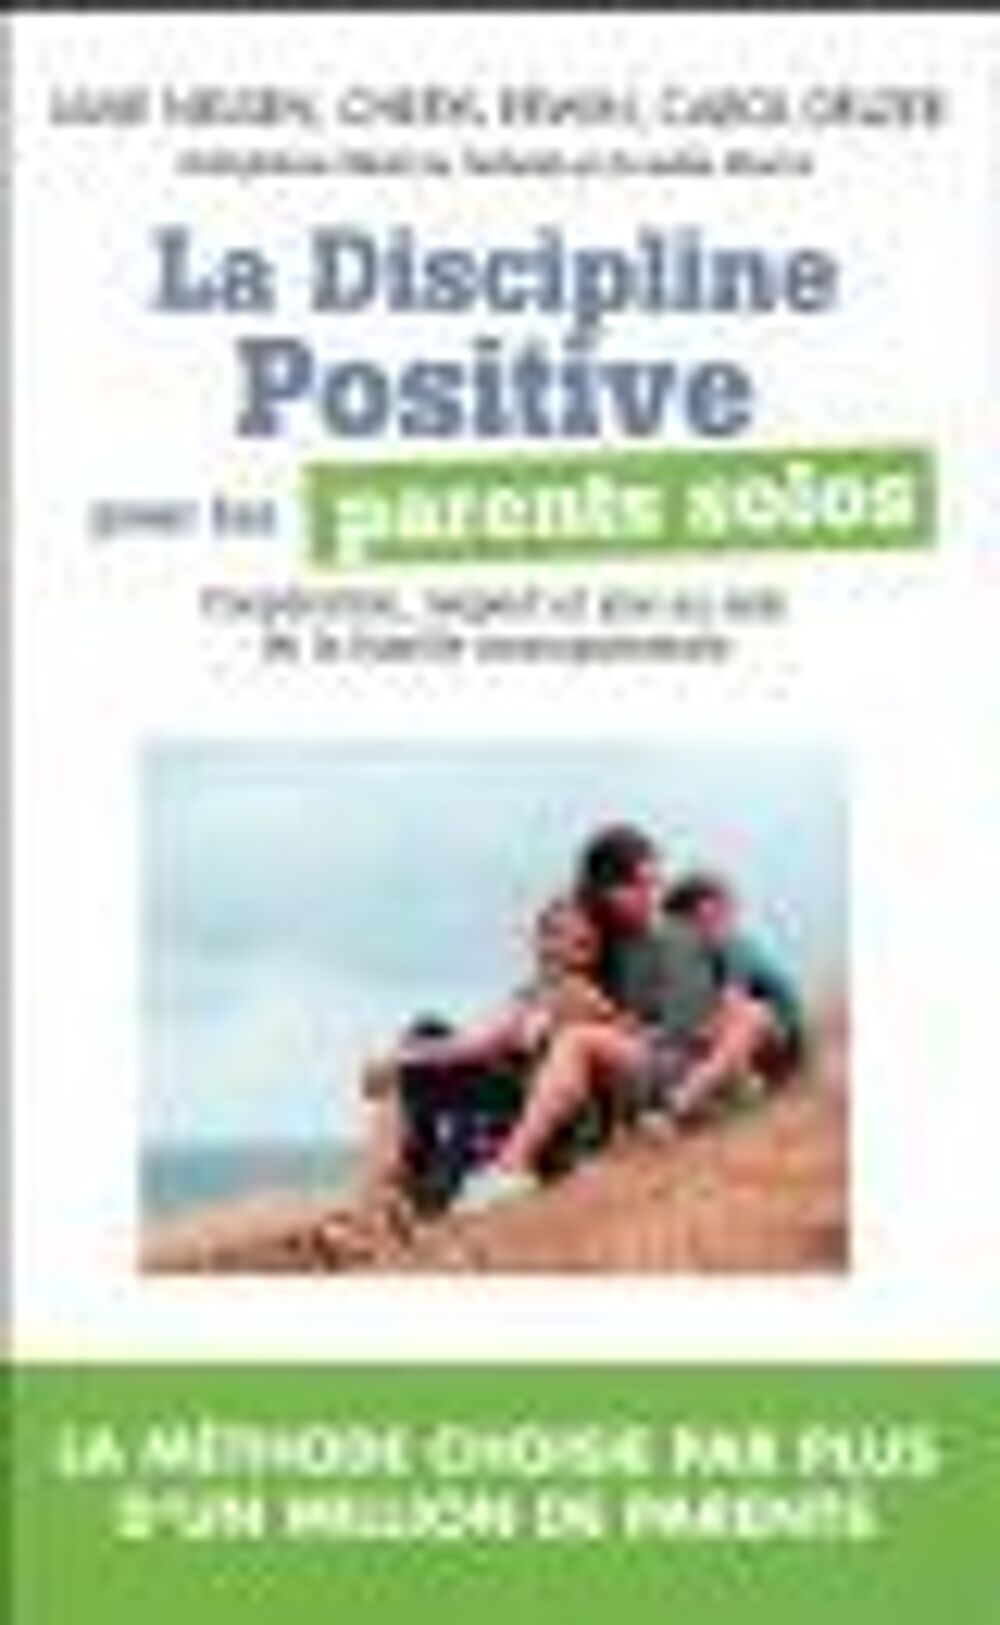 La discipline positive pour les parents solos Livres et BD